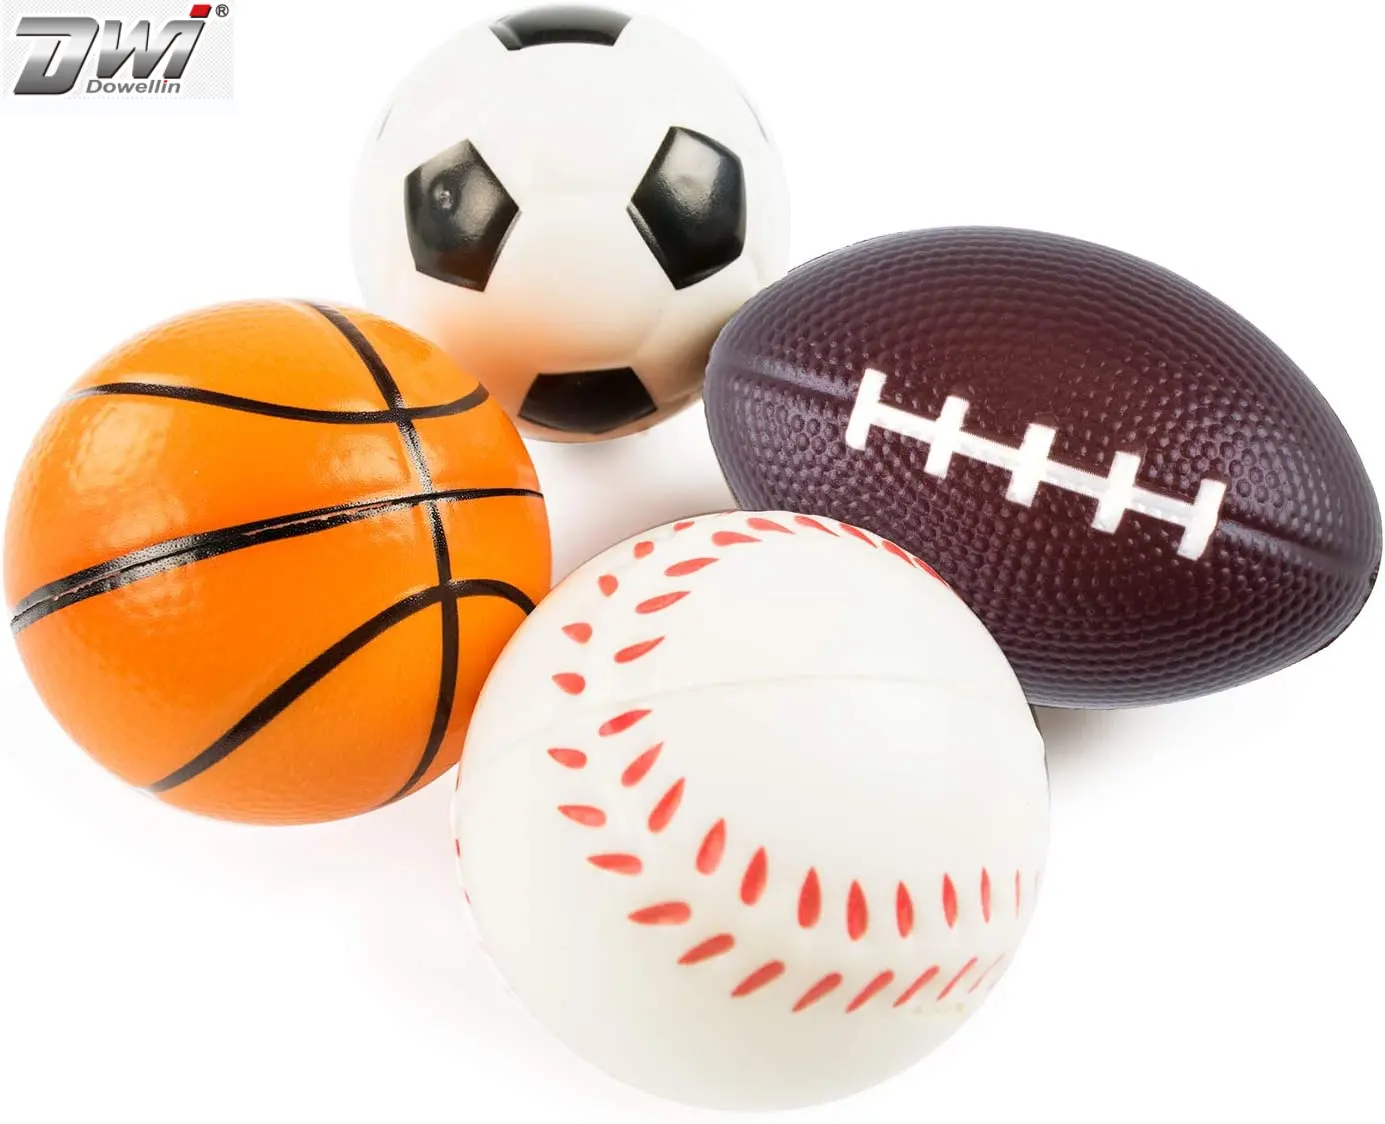 DWI Dowellin मिनी फोम खेल गेंदों 24 पैक खेल तनाव गेंदों निचोड़ गेंद बेसबॉल फुटबॉल बास्केटबॉल फुटबॉल कुत्ते पालतू खिलौना